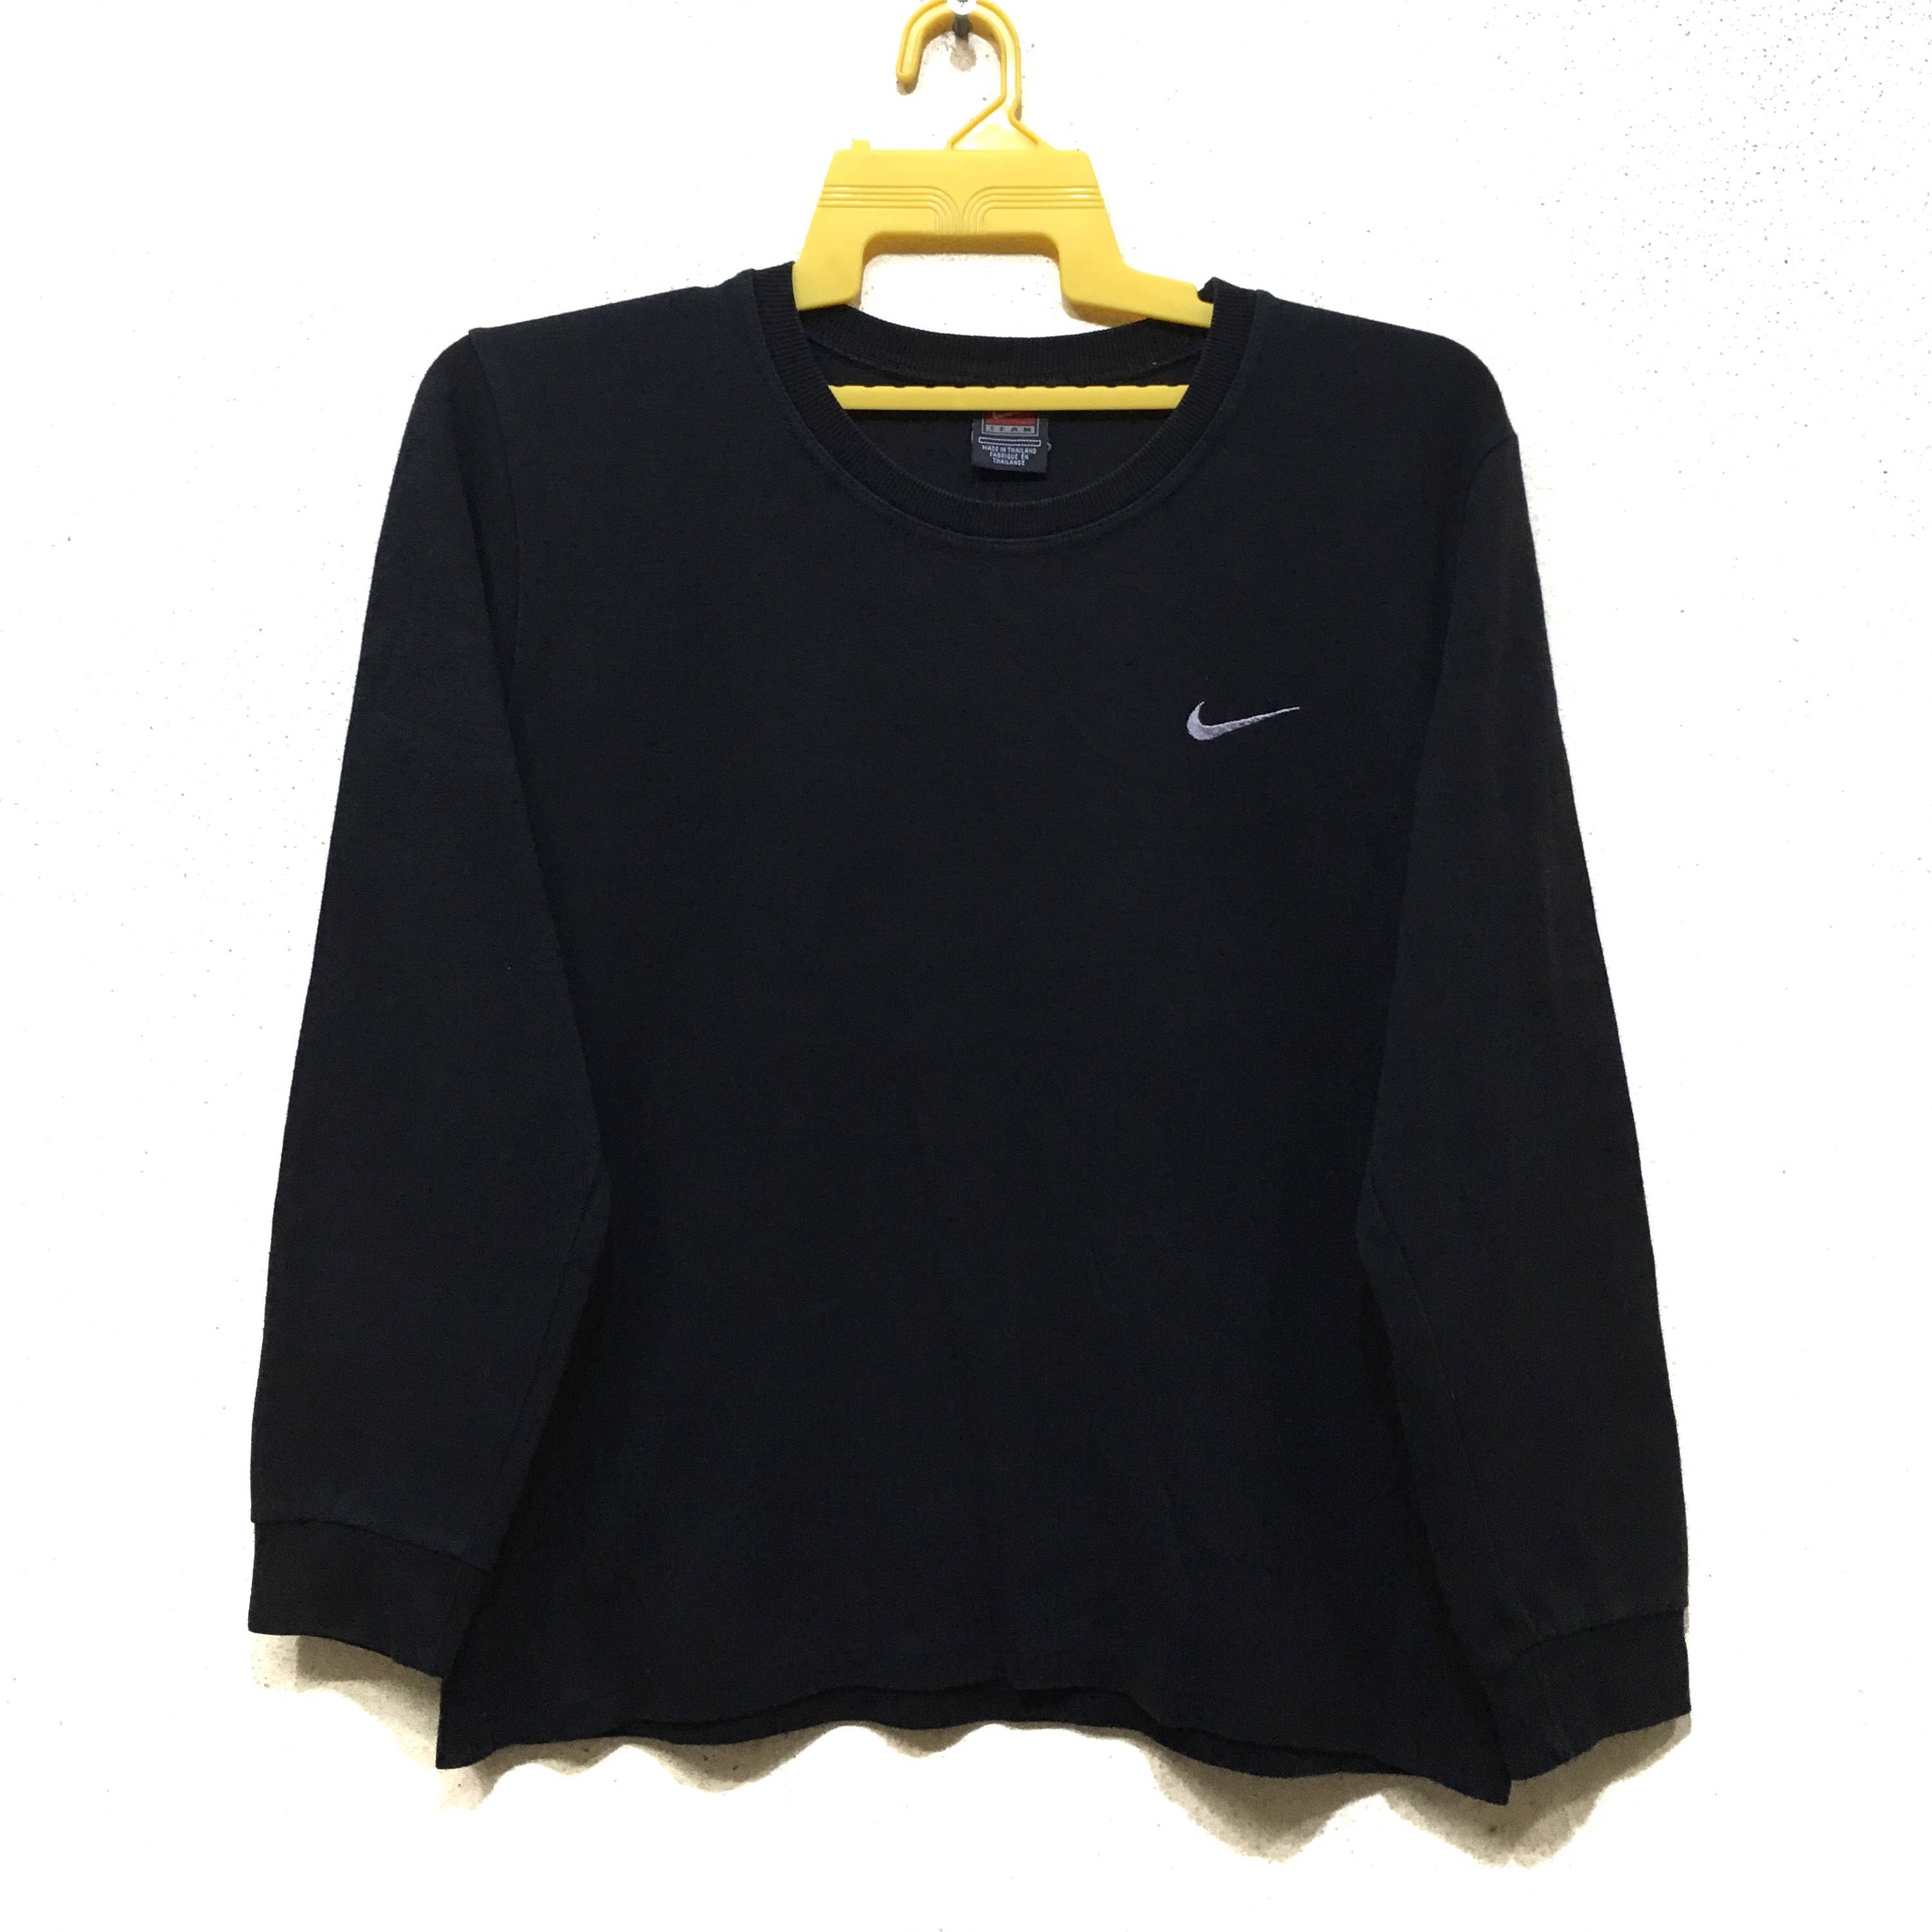 Escoba Inocente Embotellamiento Jersey Nike vintage pullover crewneat - Etsy España